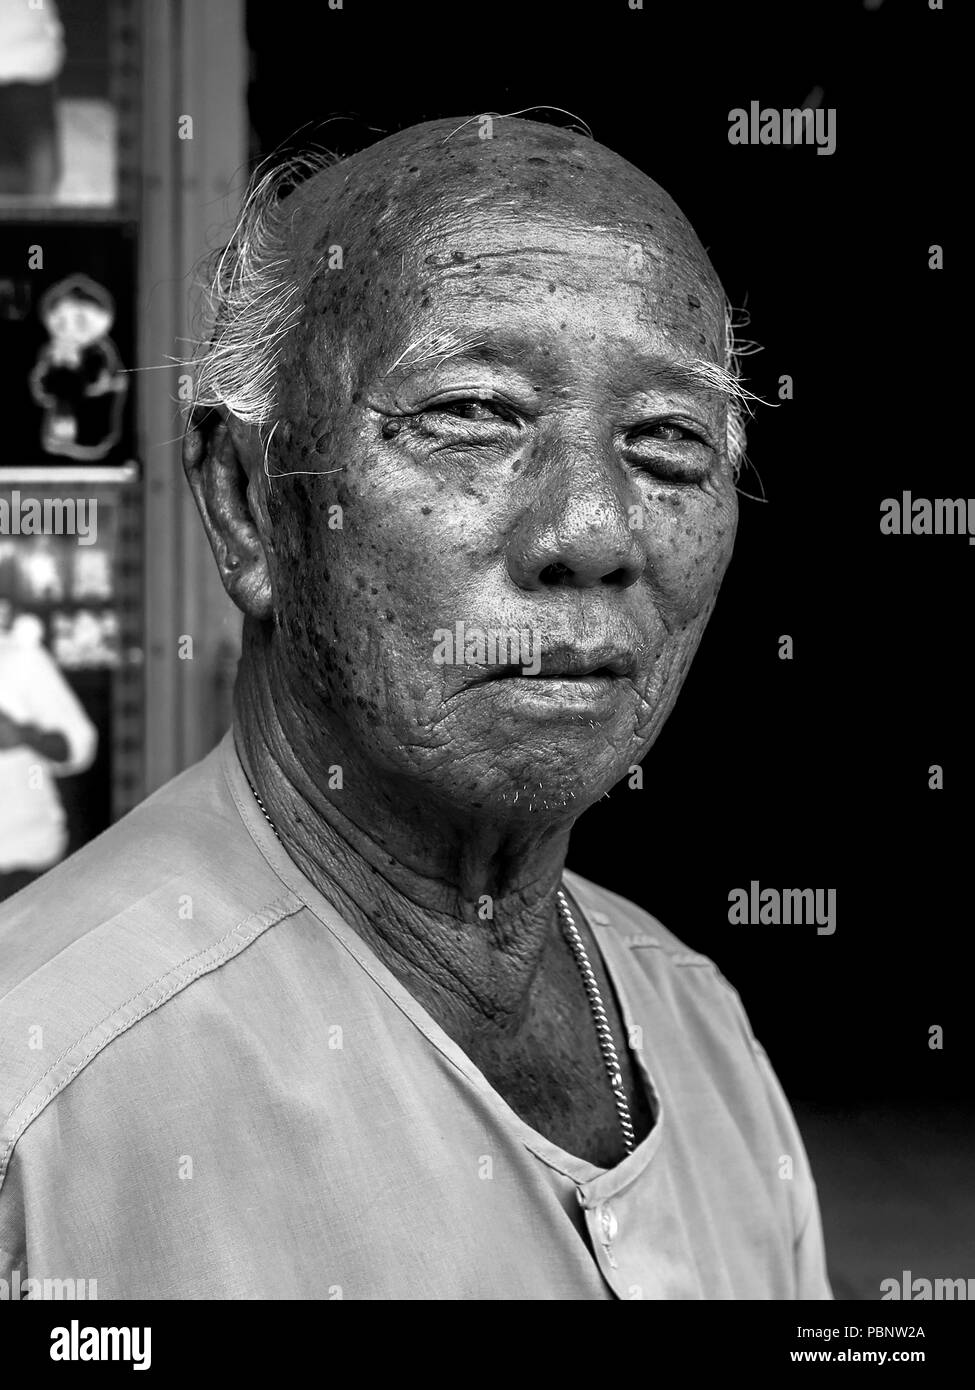 Portrait noir et blanc d'un homme asiatique âgé, Photographie noir et blanc Banque D'Images